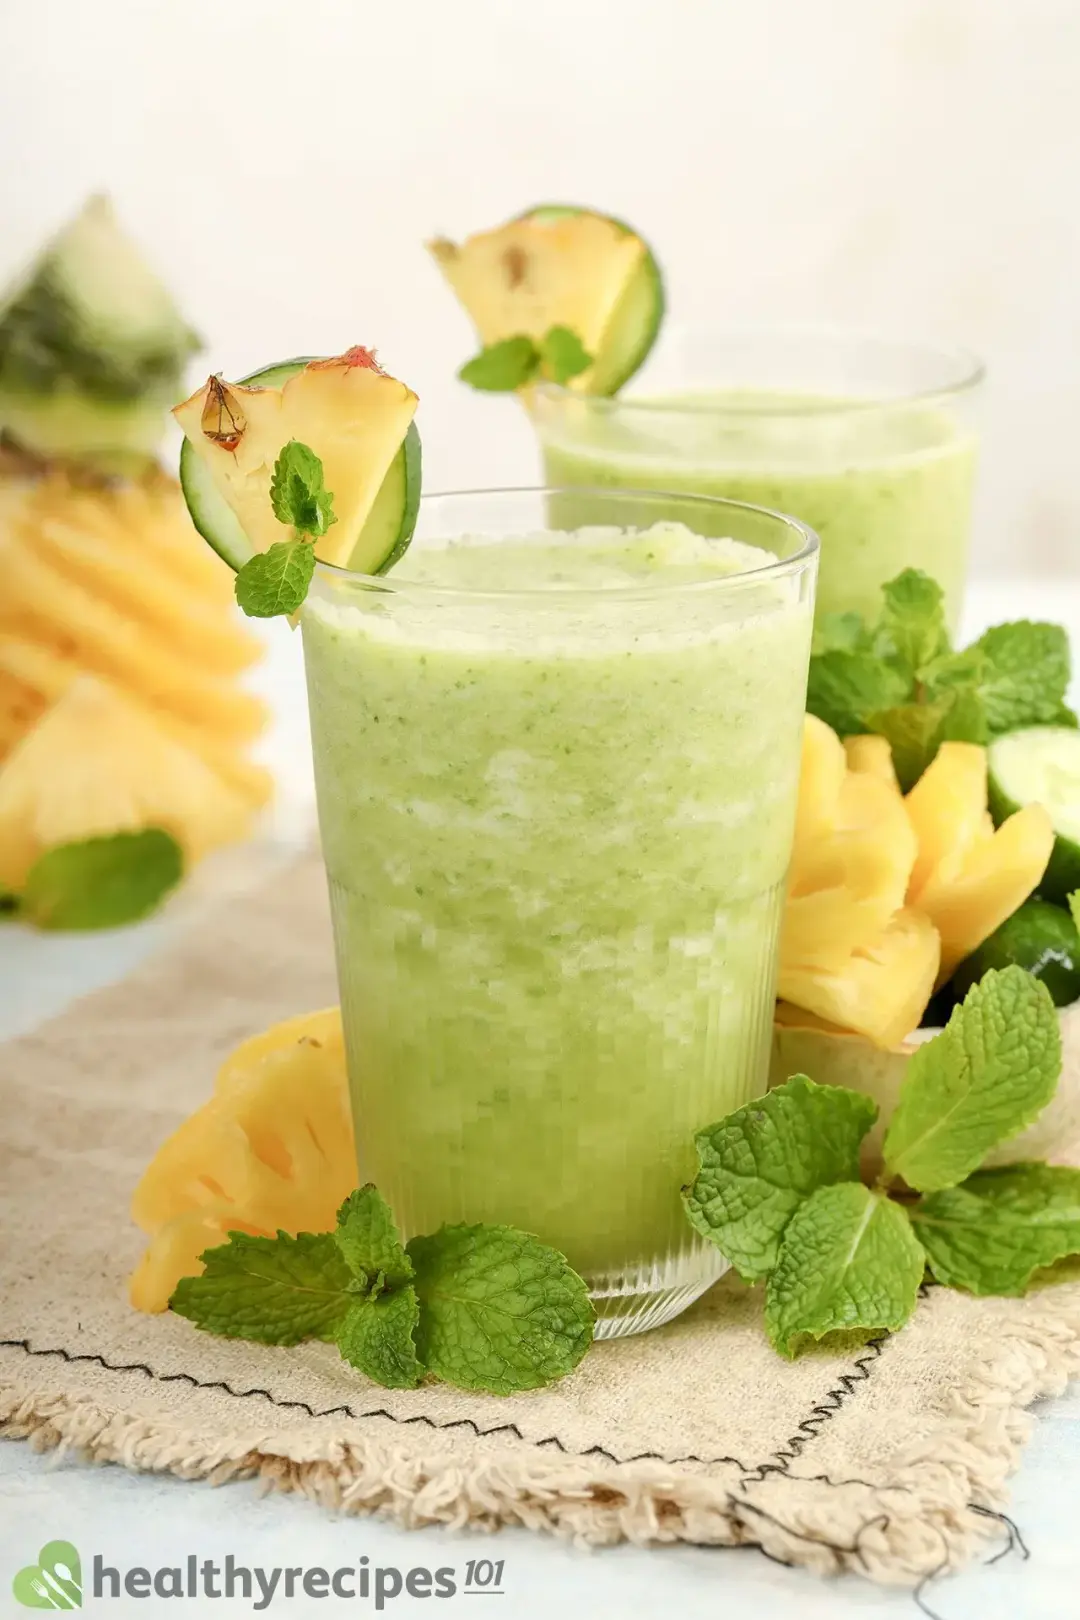 Cucumber Pineapple Smoothie Recipe